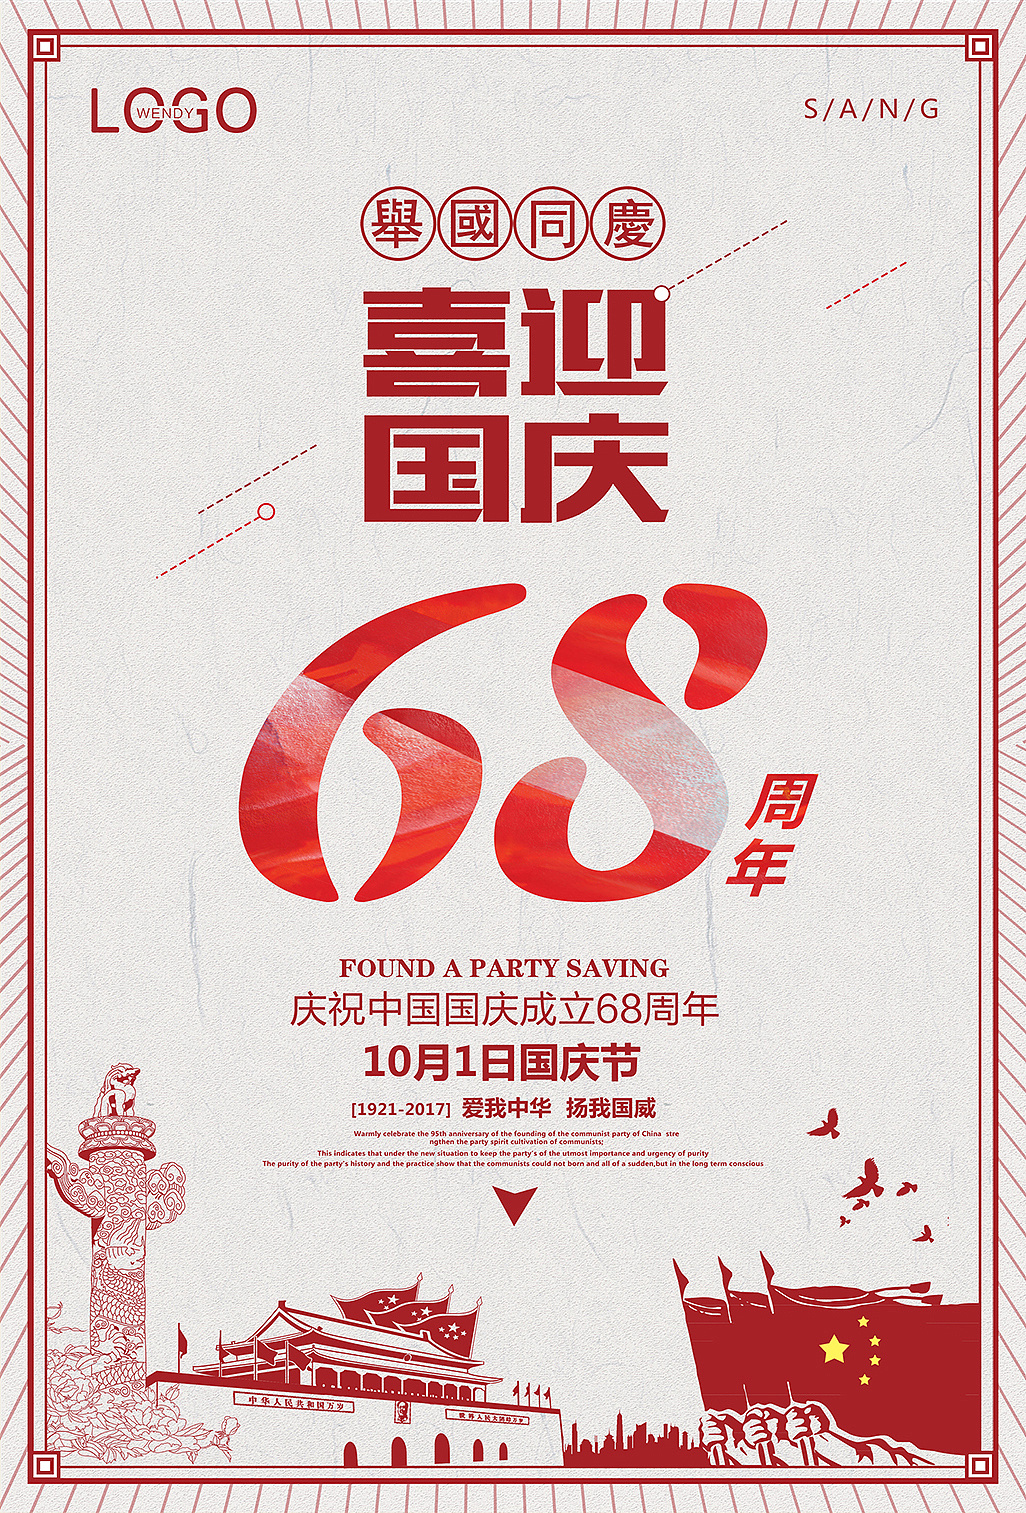 国庆60周年大庆活动庆典晚会 - 庆典演出 - 北京艺美和电子科技有限公司